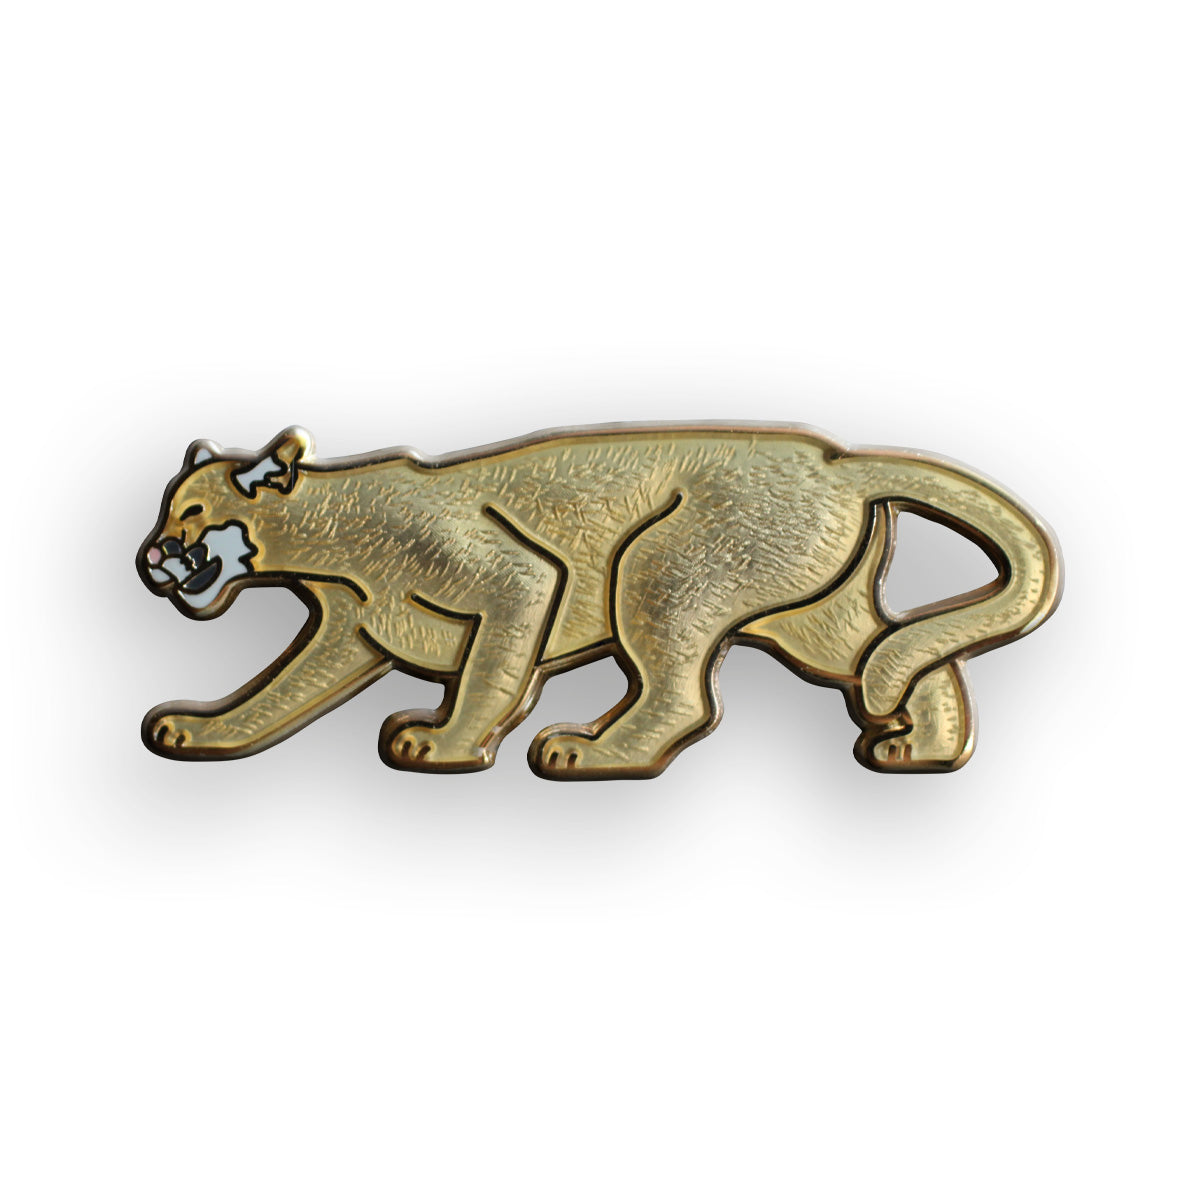 Cougar/Panther/Mountain Lion